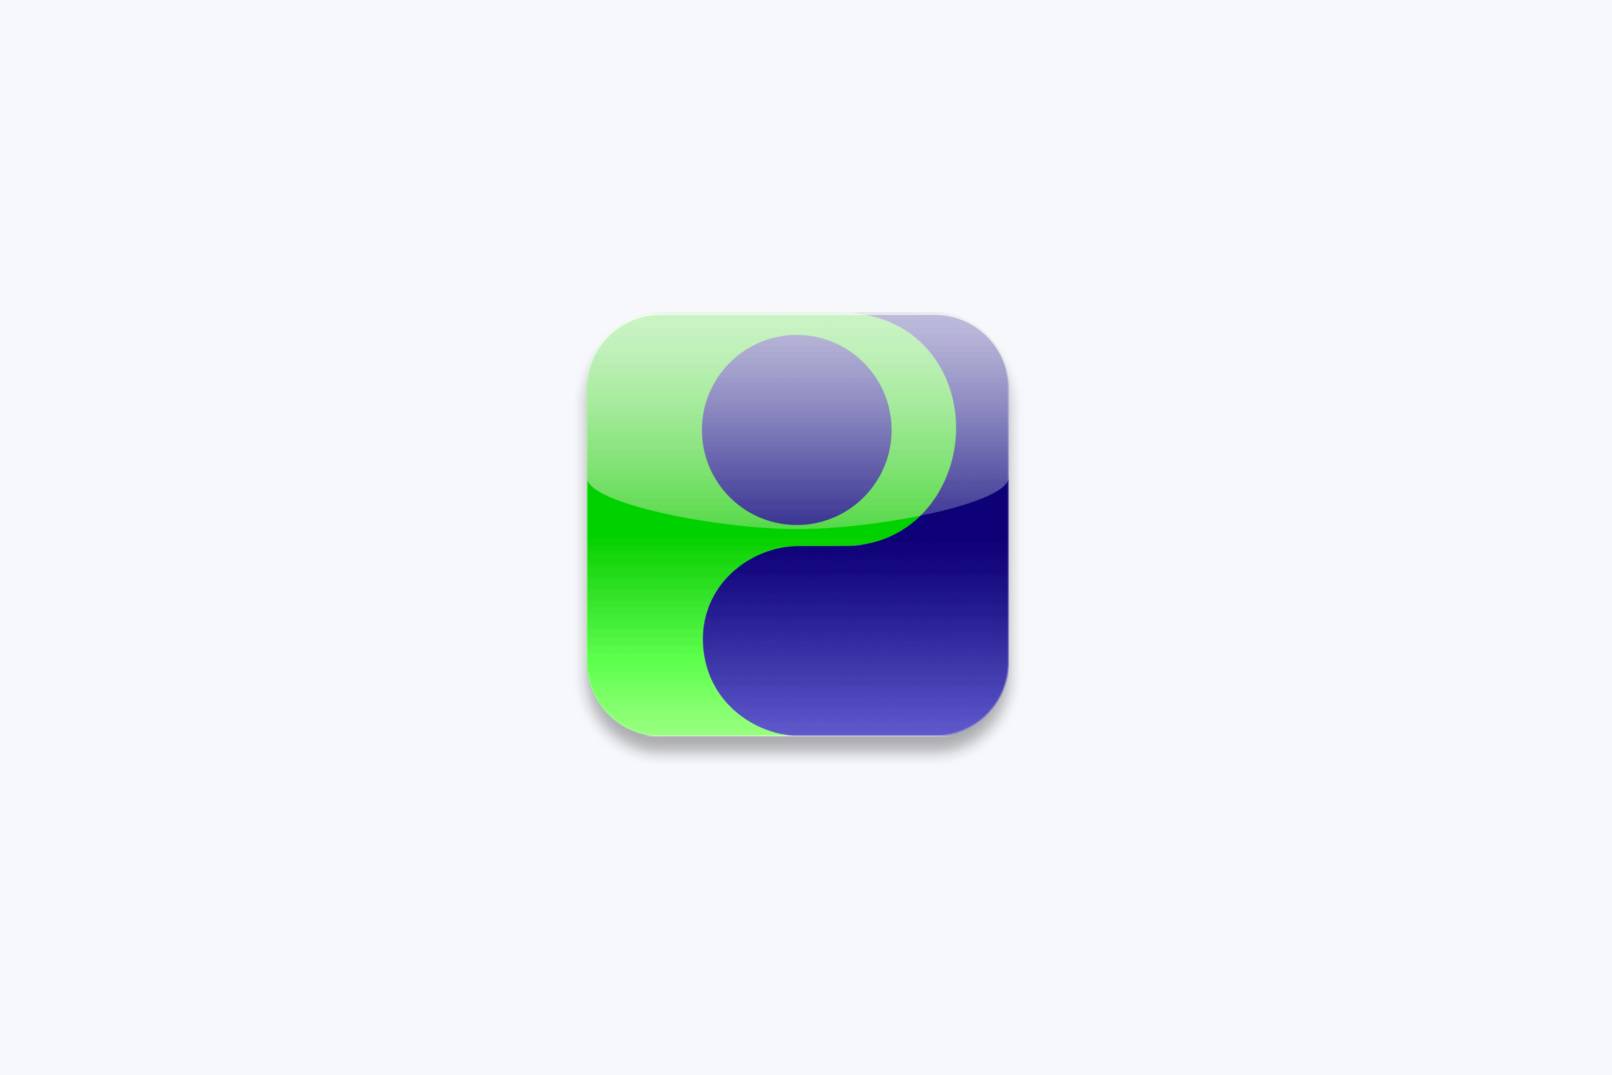 prisma meditation app icon design